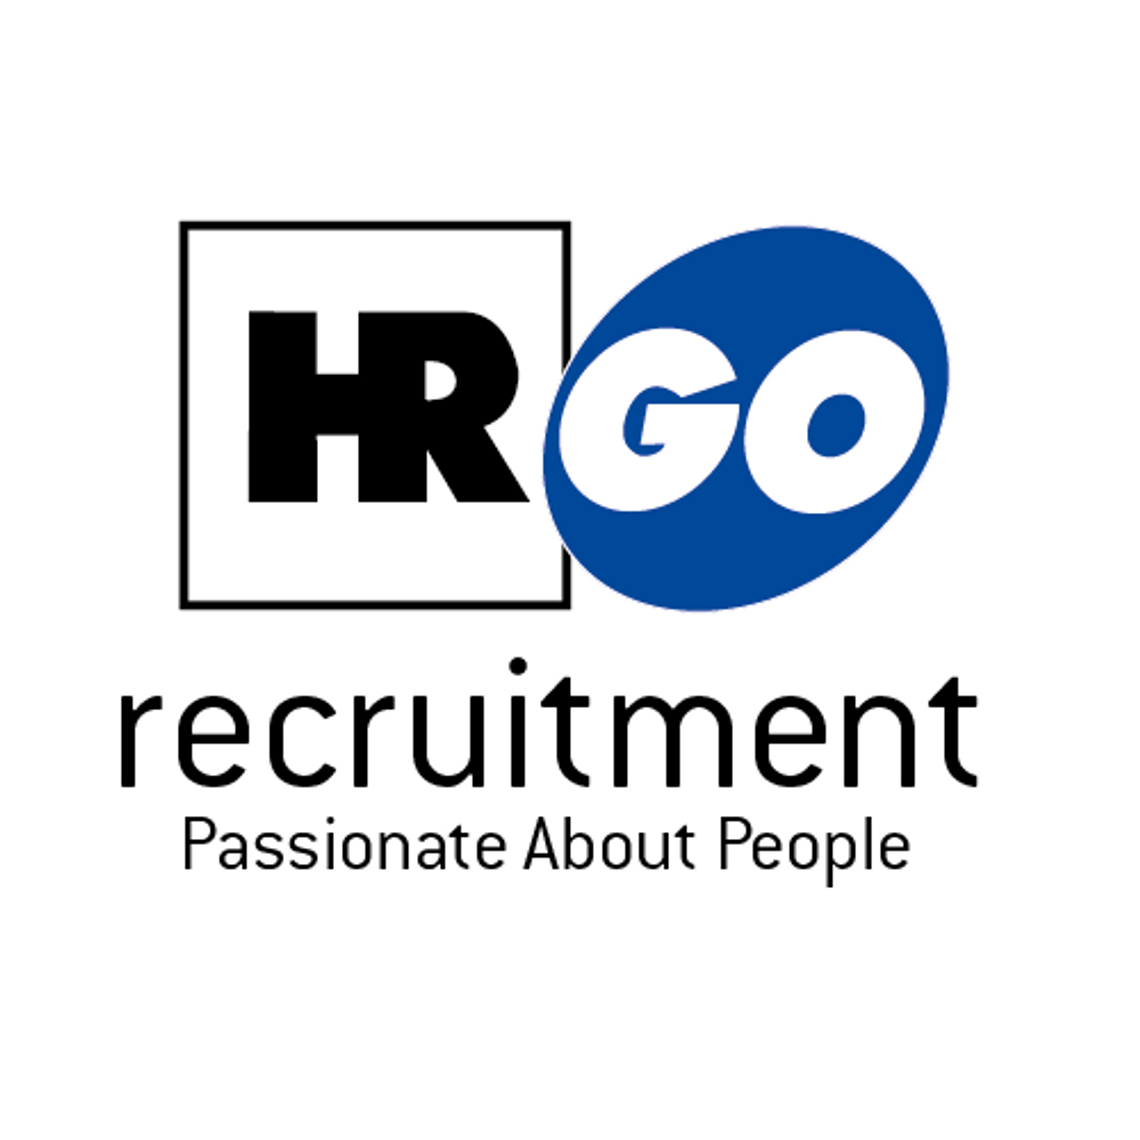 HR GO Recruitment - Agencja rekrutacyjna